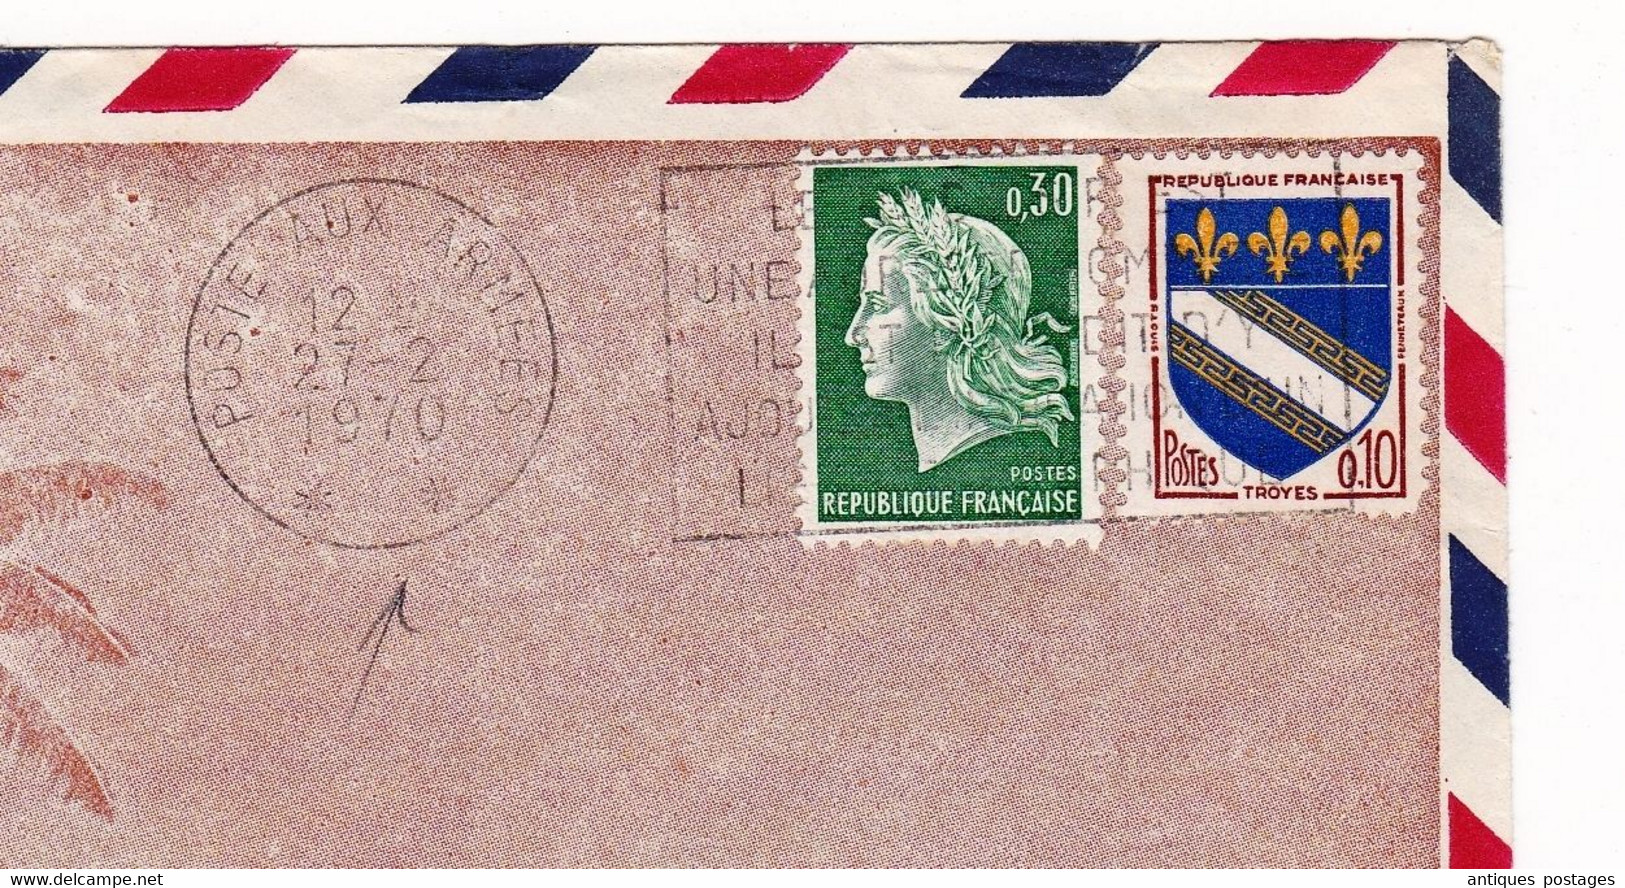 Lettre 1970 Tahiti Secteur Postal Militaire 91417 Perle Du Pacifique Poste Aux Armées Iwuy Nord - Briefe U. Dokumente